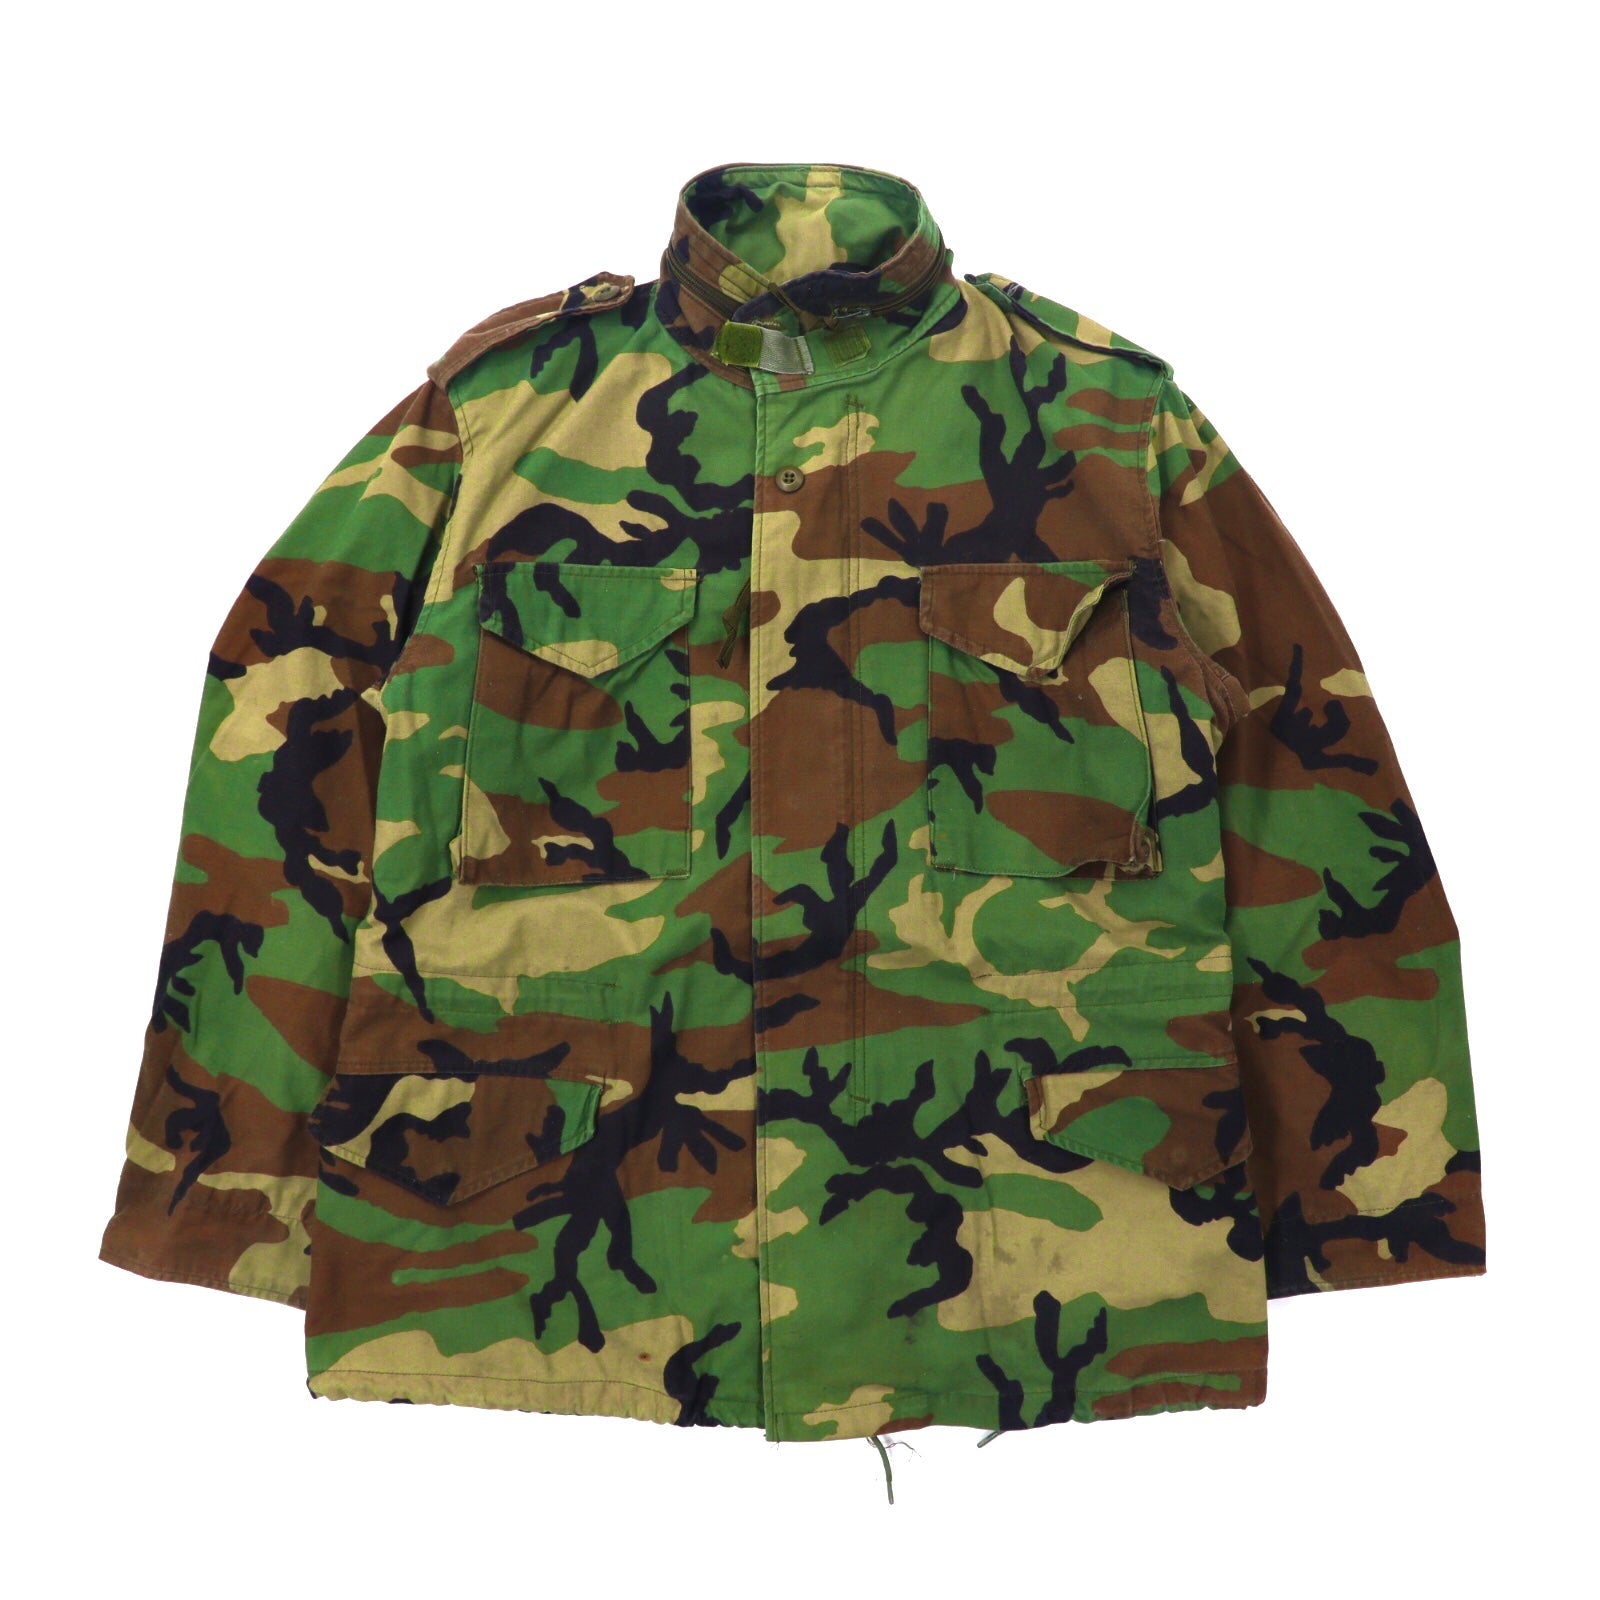 US ARMY Field Jacket M Khaki camouflage Pattern 8415-01-099 